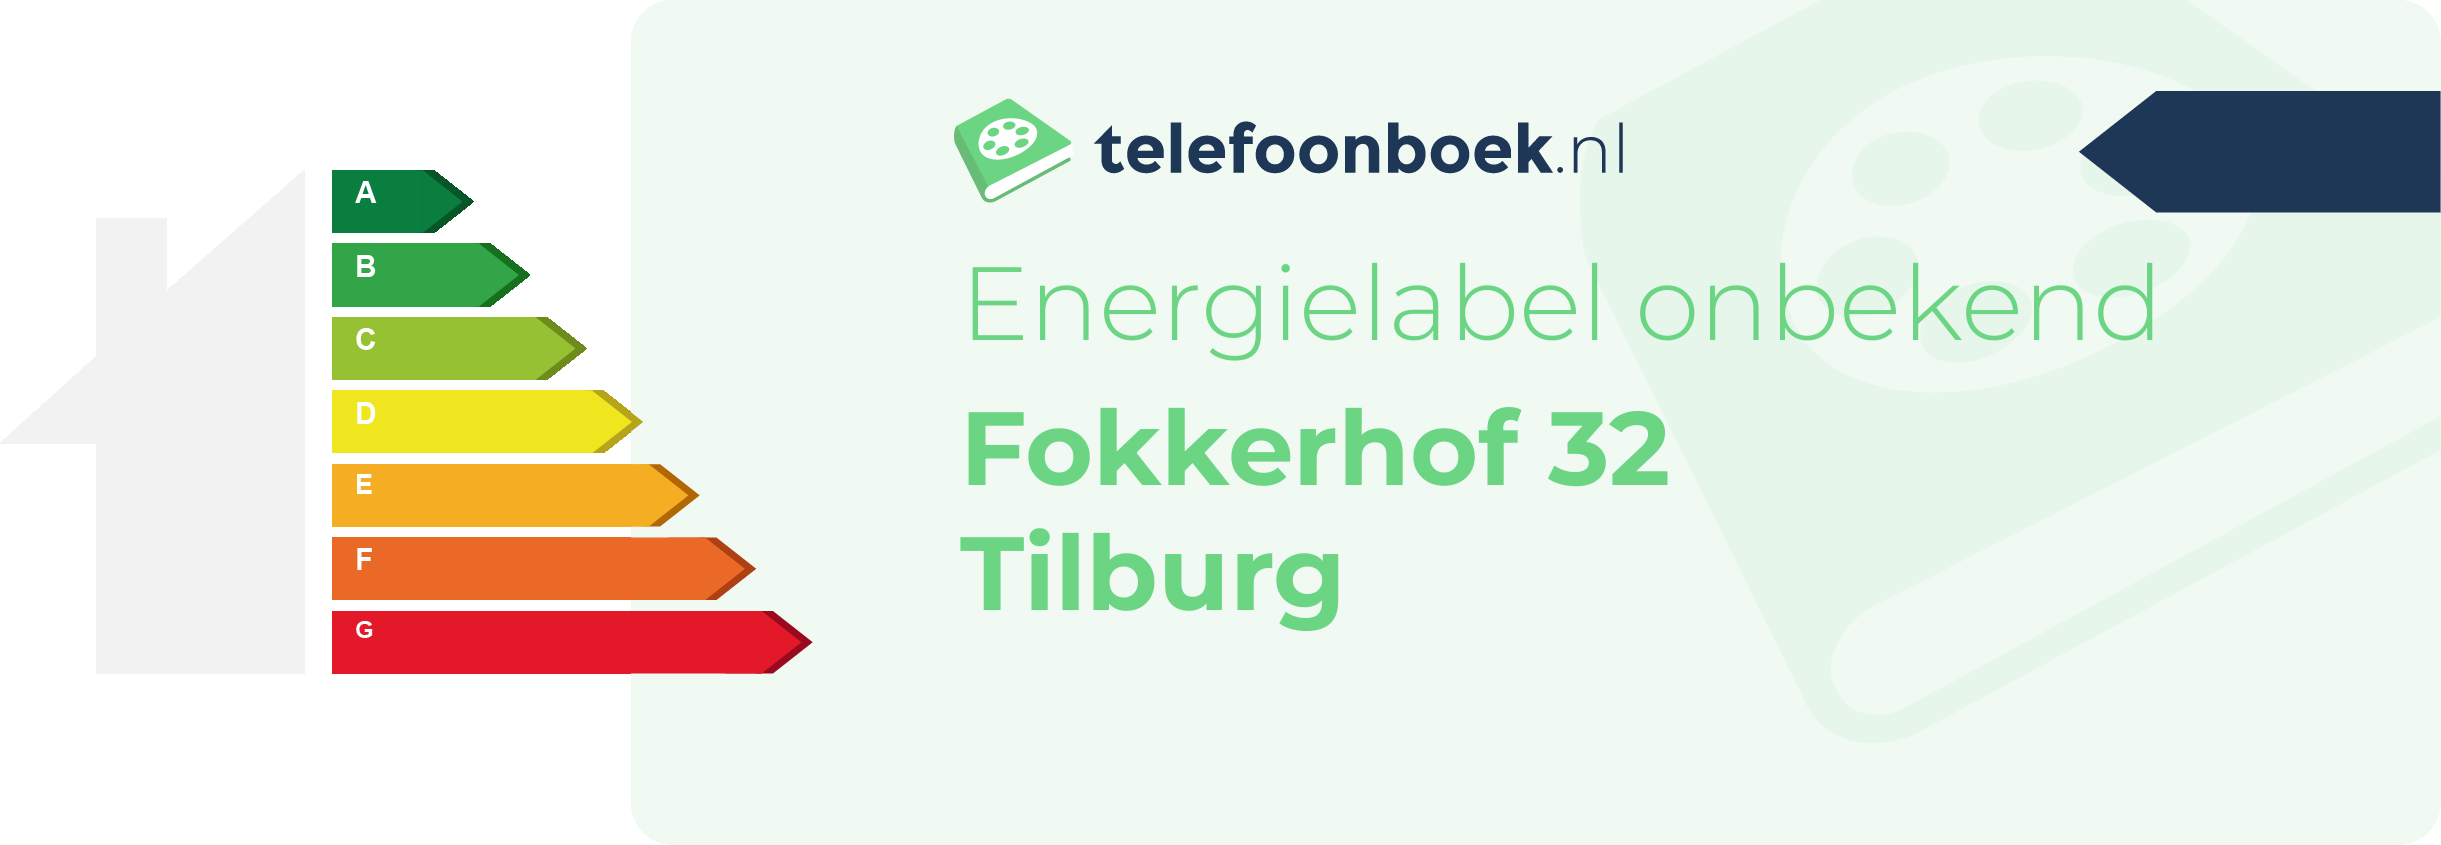 Energielabel Fokkerhof 32 Tilburg